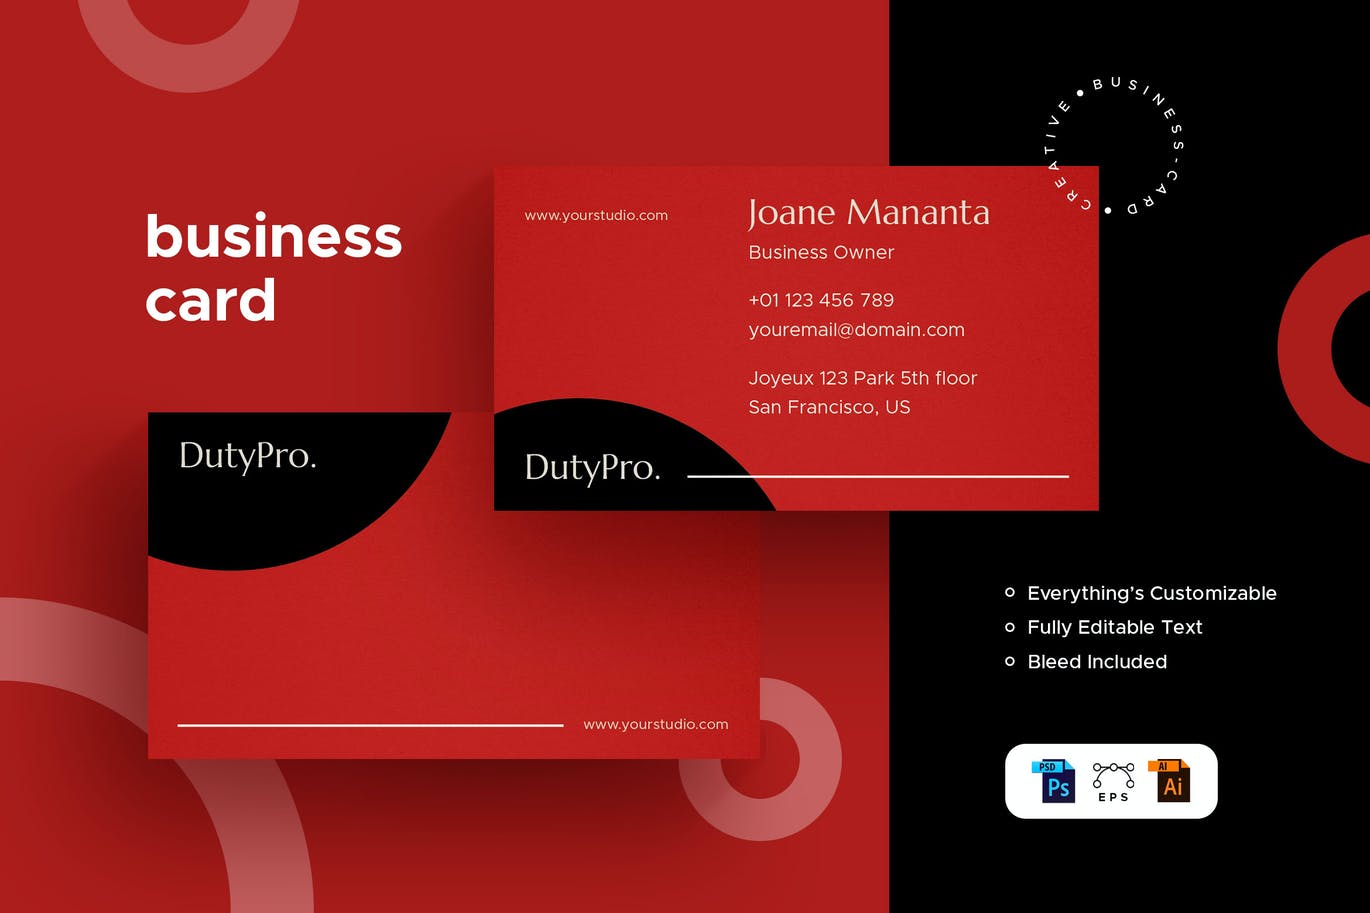 Duty Pro - Business Card - Stationery Kit